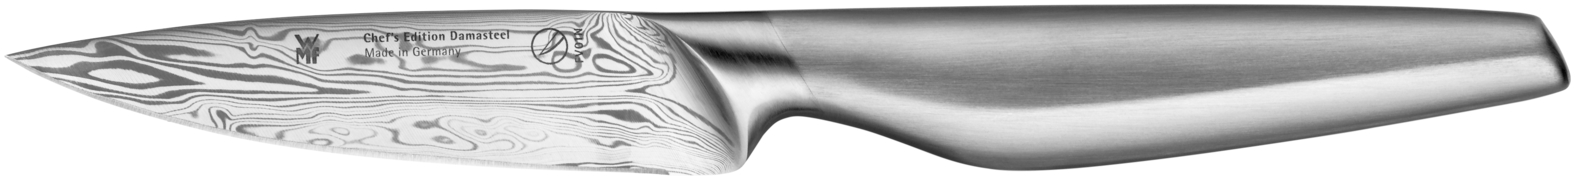 Универсальный нож Chef's Edition Damasteel 10см